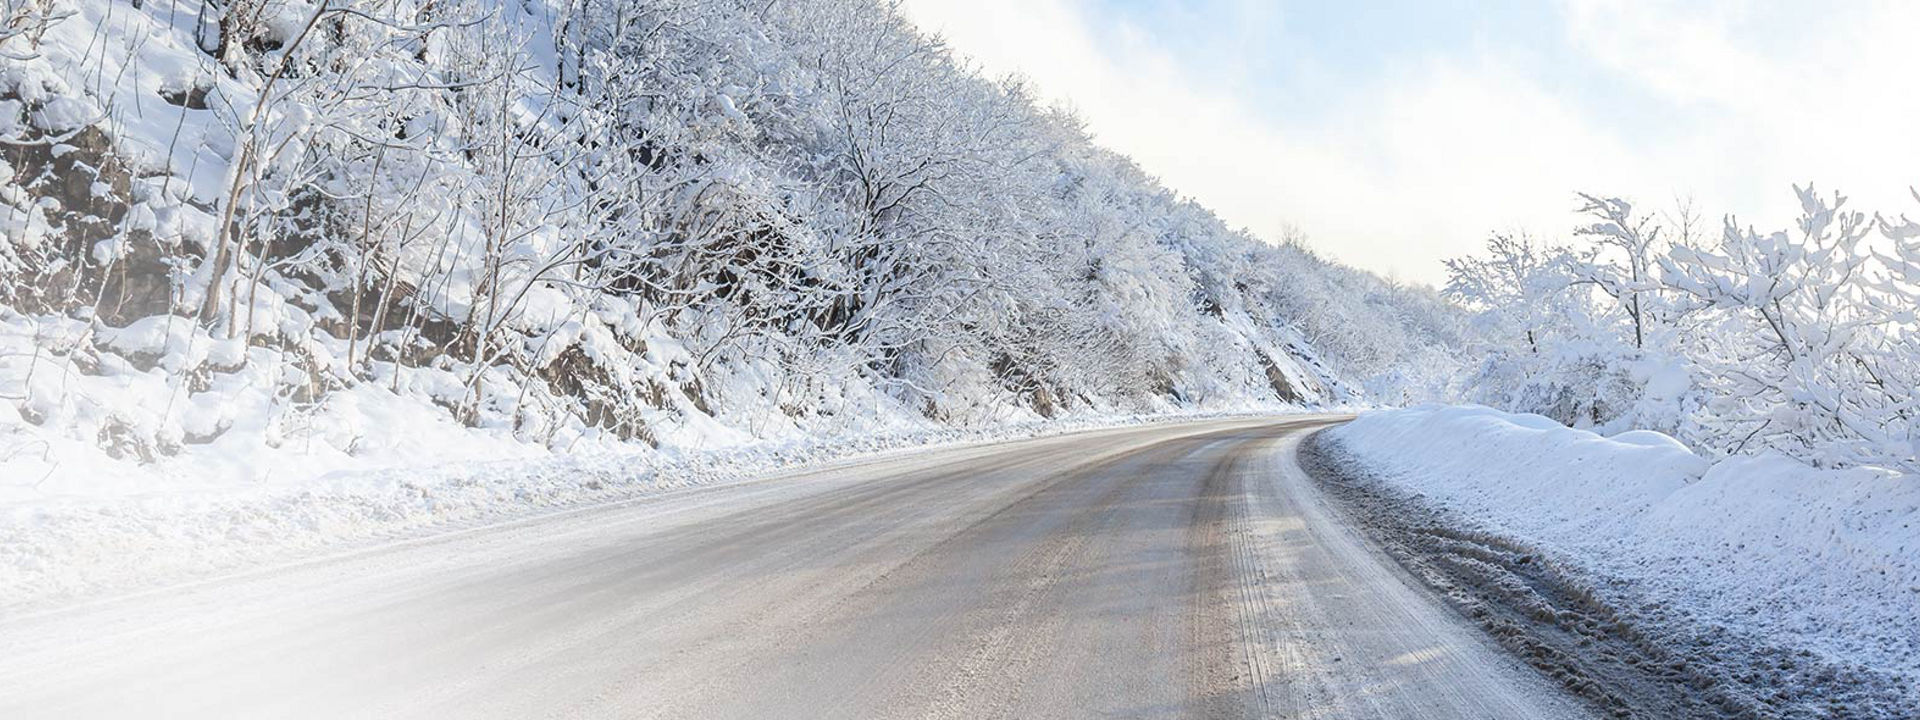 Deze afbeelding toont een met sneeuw bedekte weg waarop sporen zichtbaar zijn van wintertruckbanden van Bridgestone.